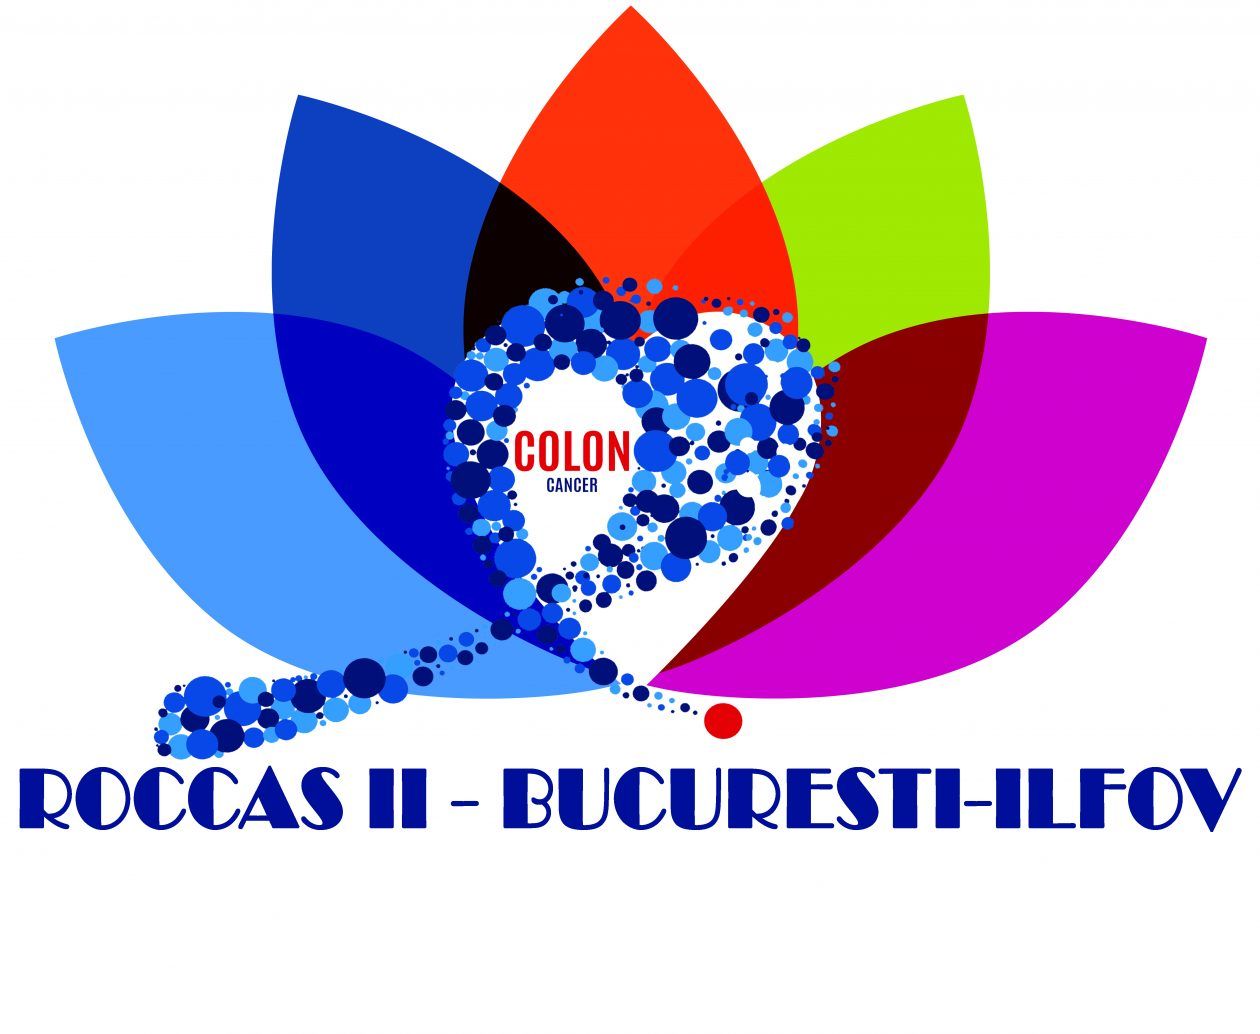 Peste 1.000 de persoane testate pentru cancerul colorectal în București-Ilfov